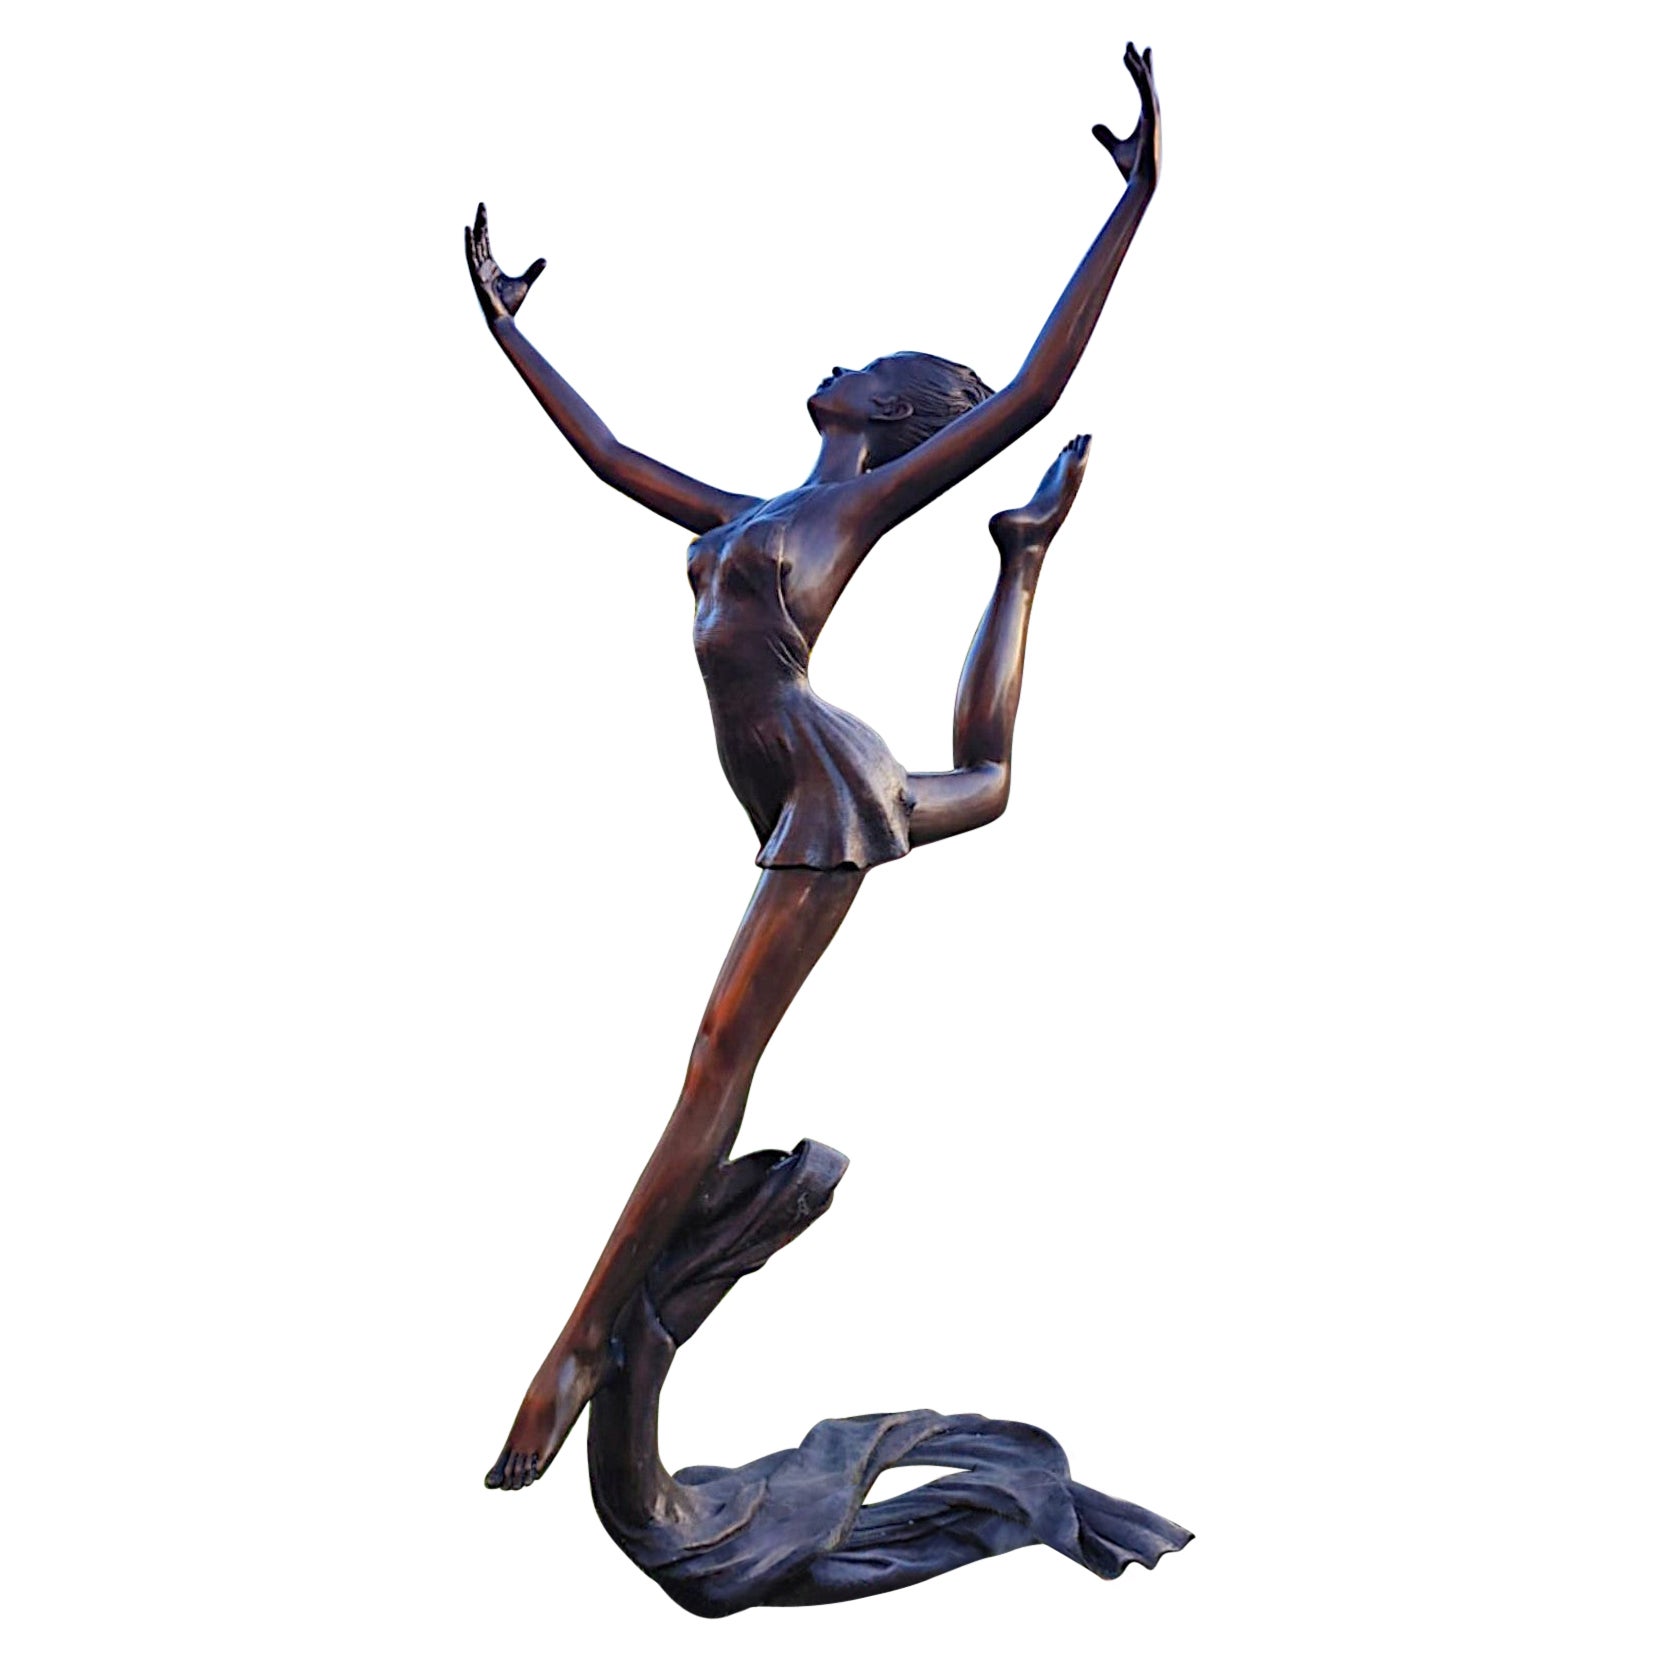 A Stunning Large Bronze Figurative Sculpture of a Ballet Dancer